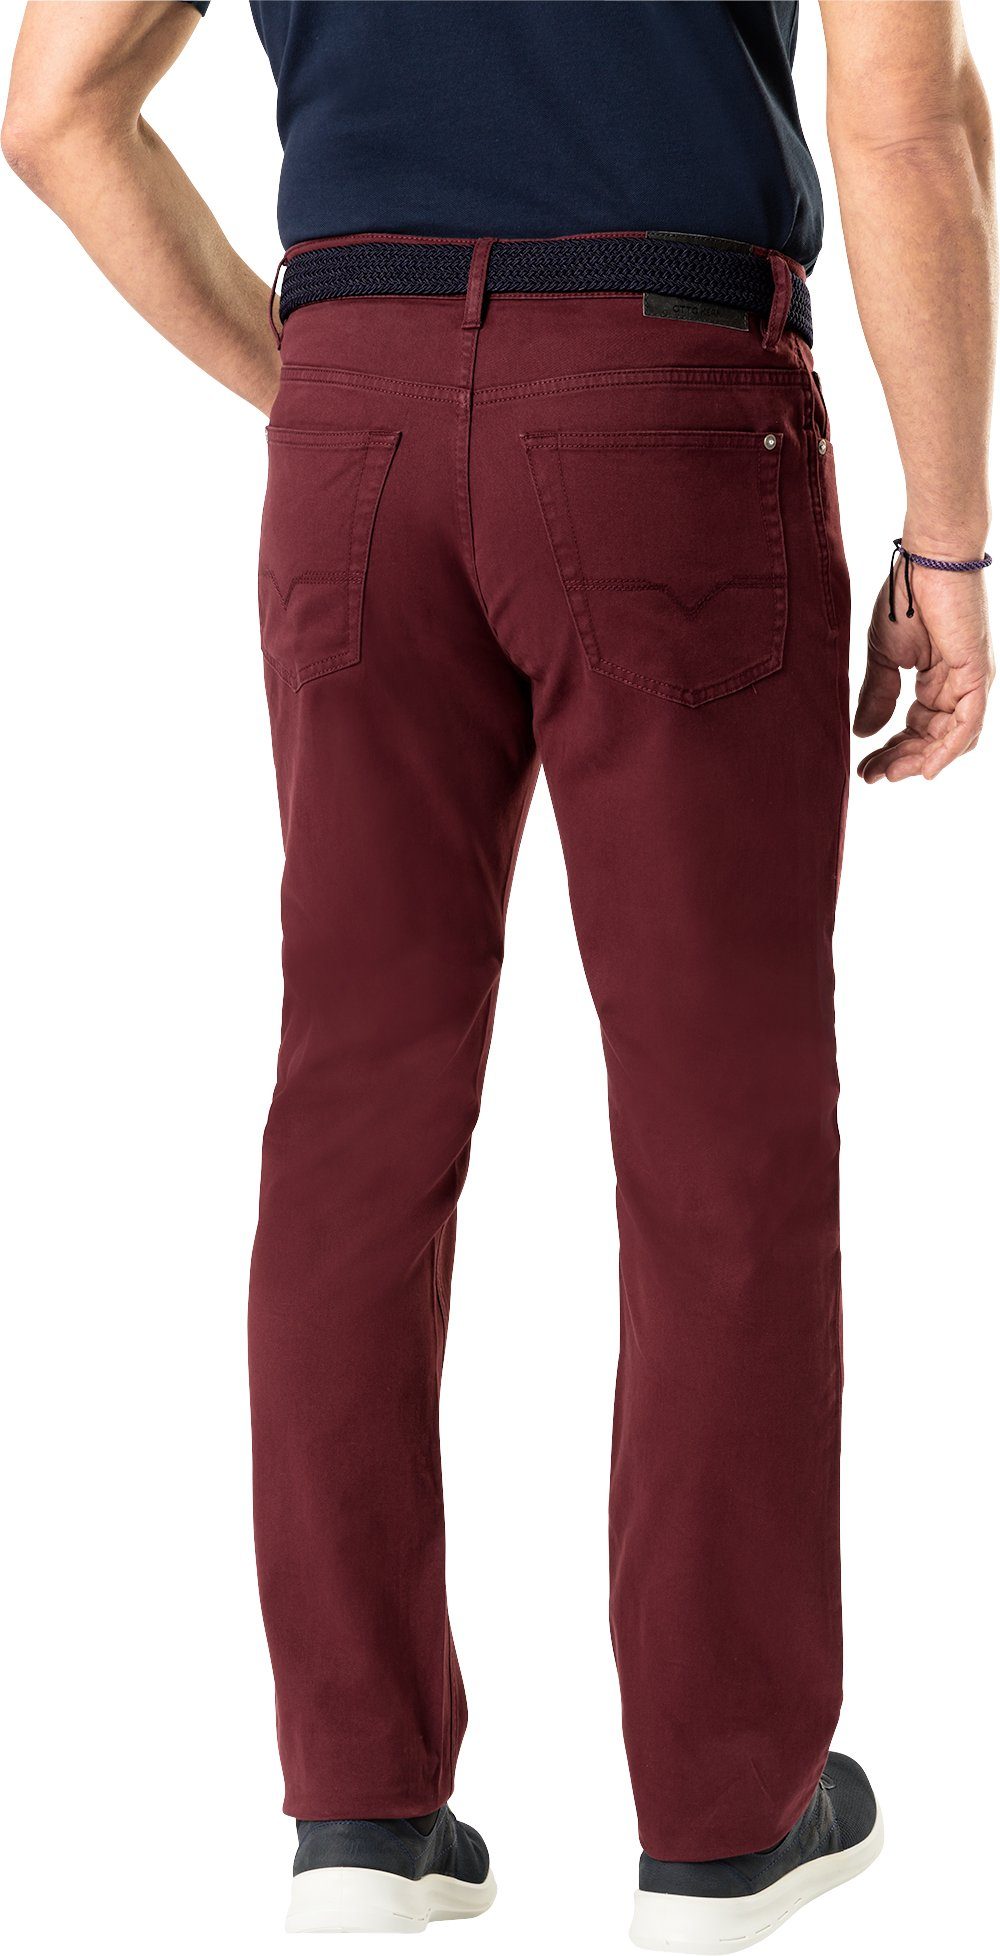 Kern 5-Pocket-Style, Otto hervorragender Stretch-Jeans Farbintensität Kern im bordeaux mit